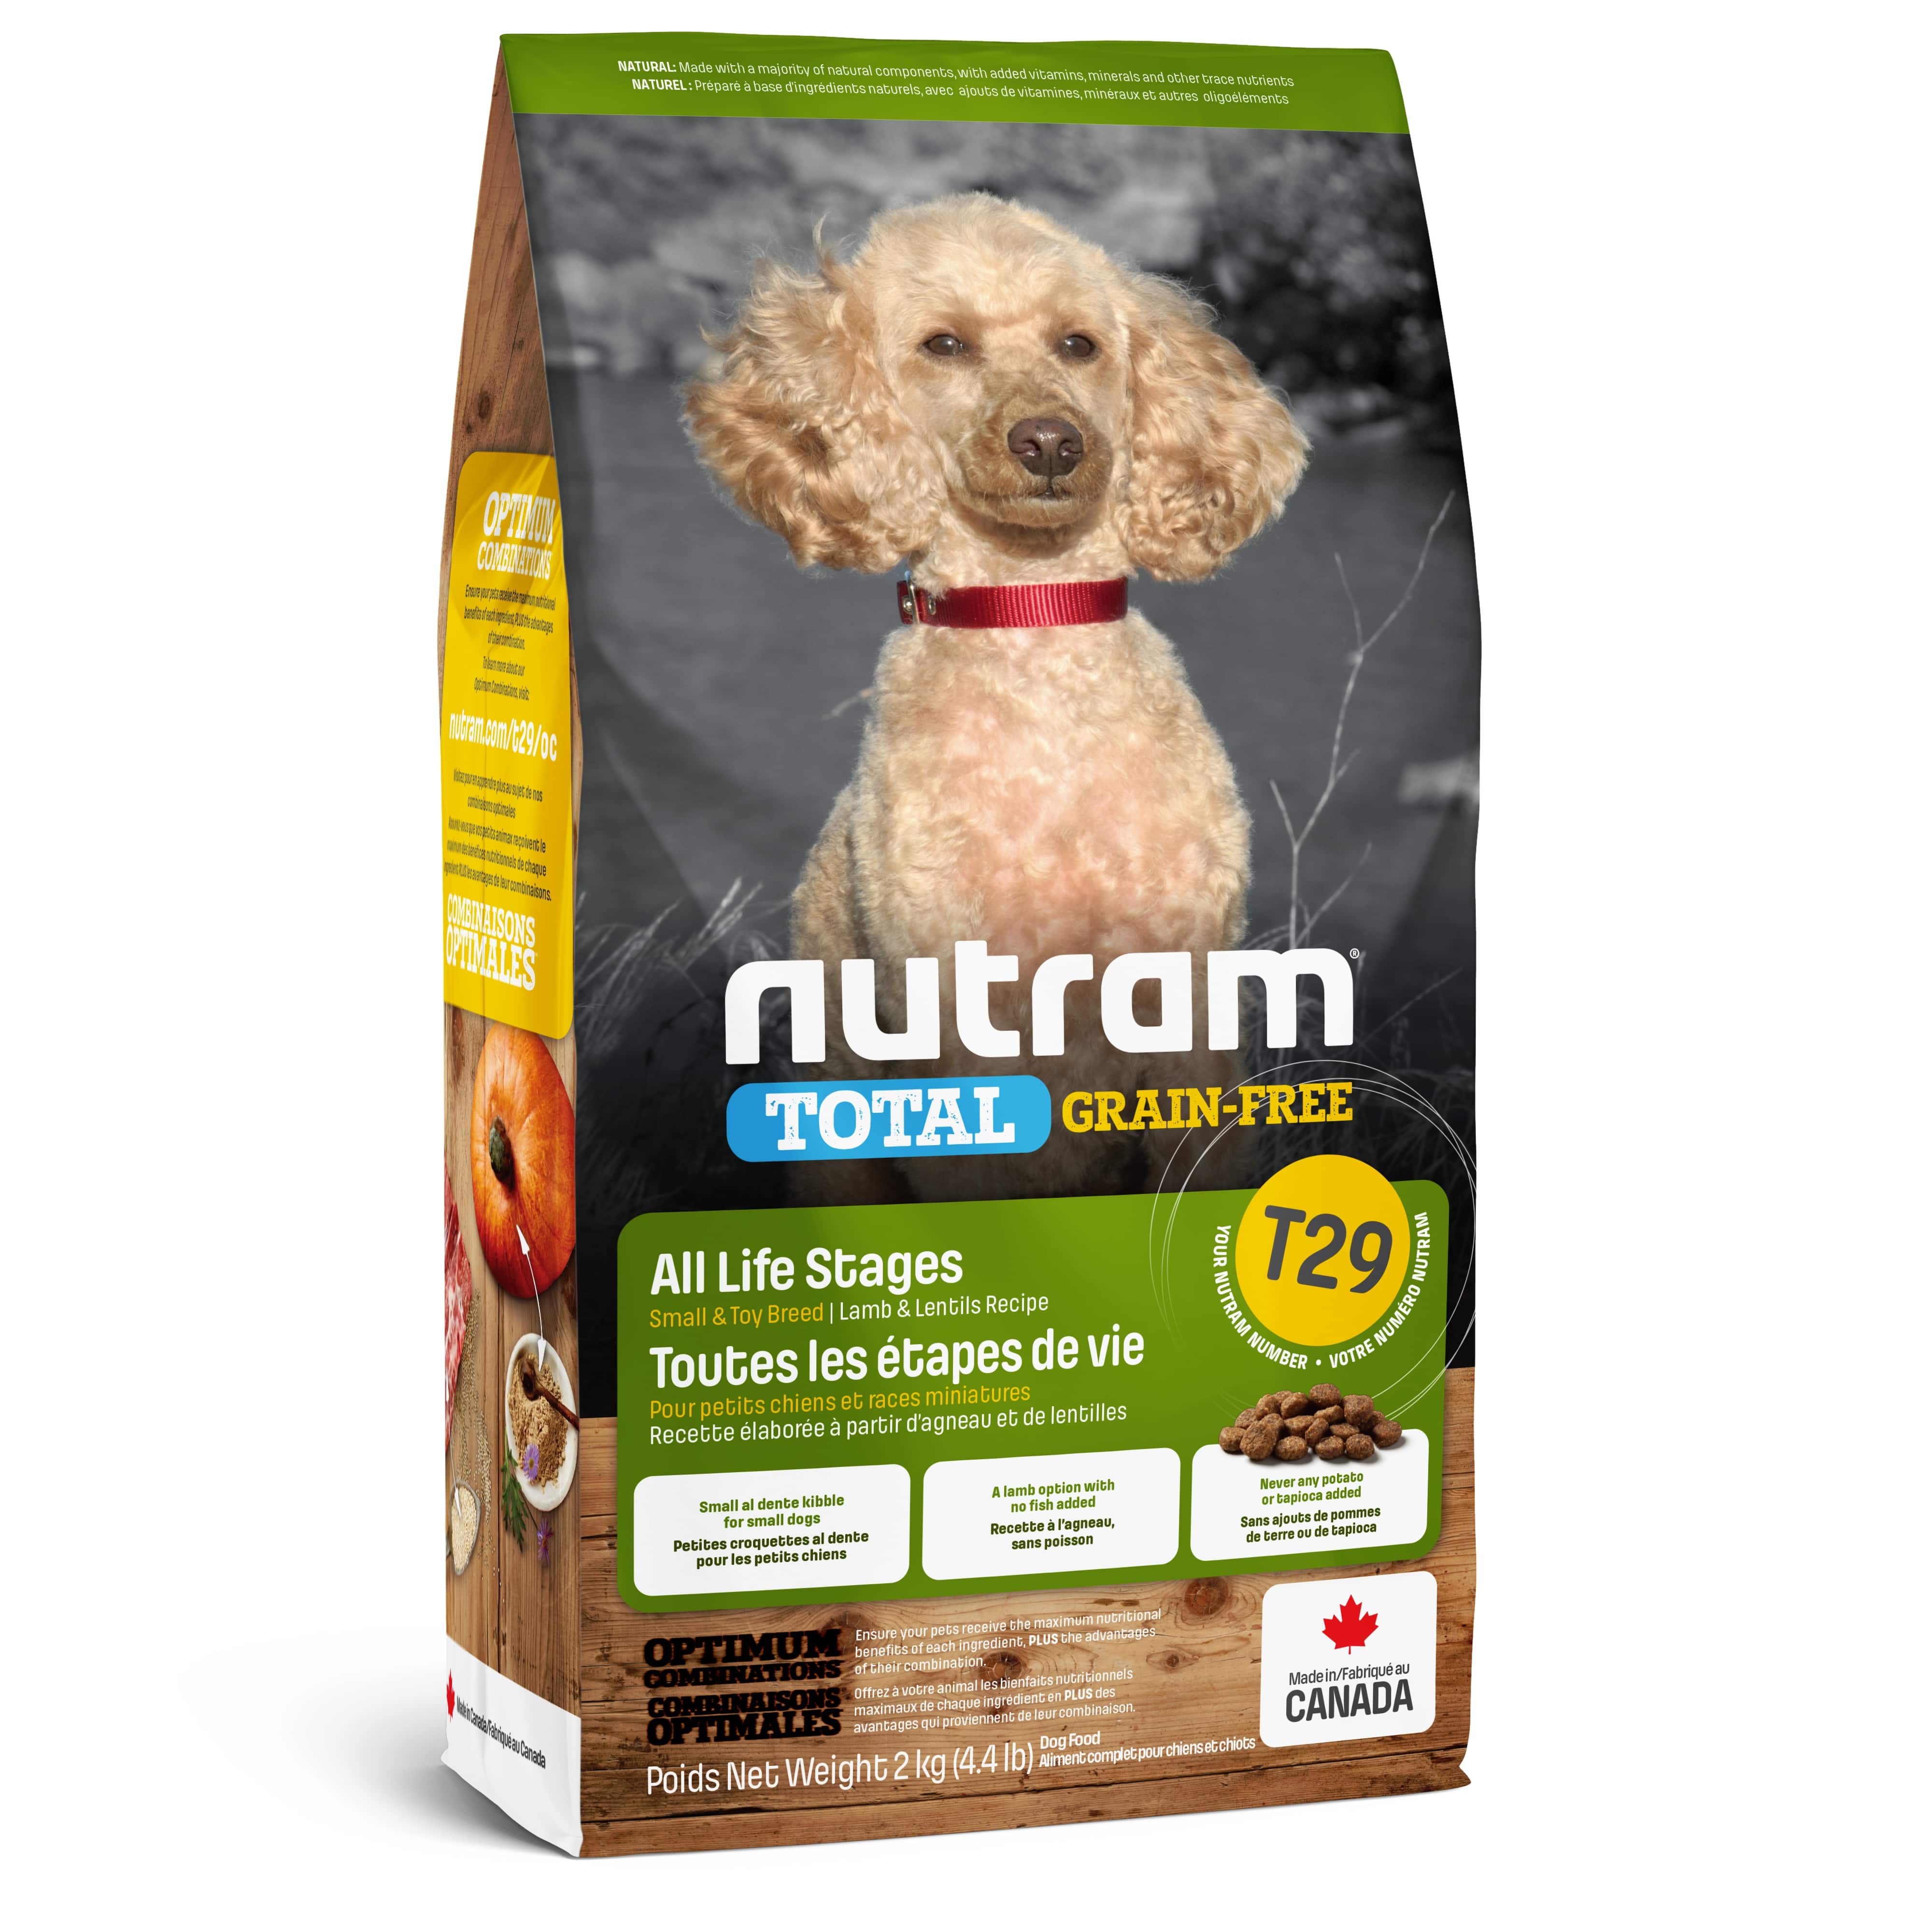 T29 Nutram Total Grain-Free® Lamb and Lentils Recipe Dog Food